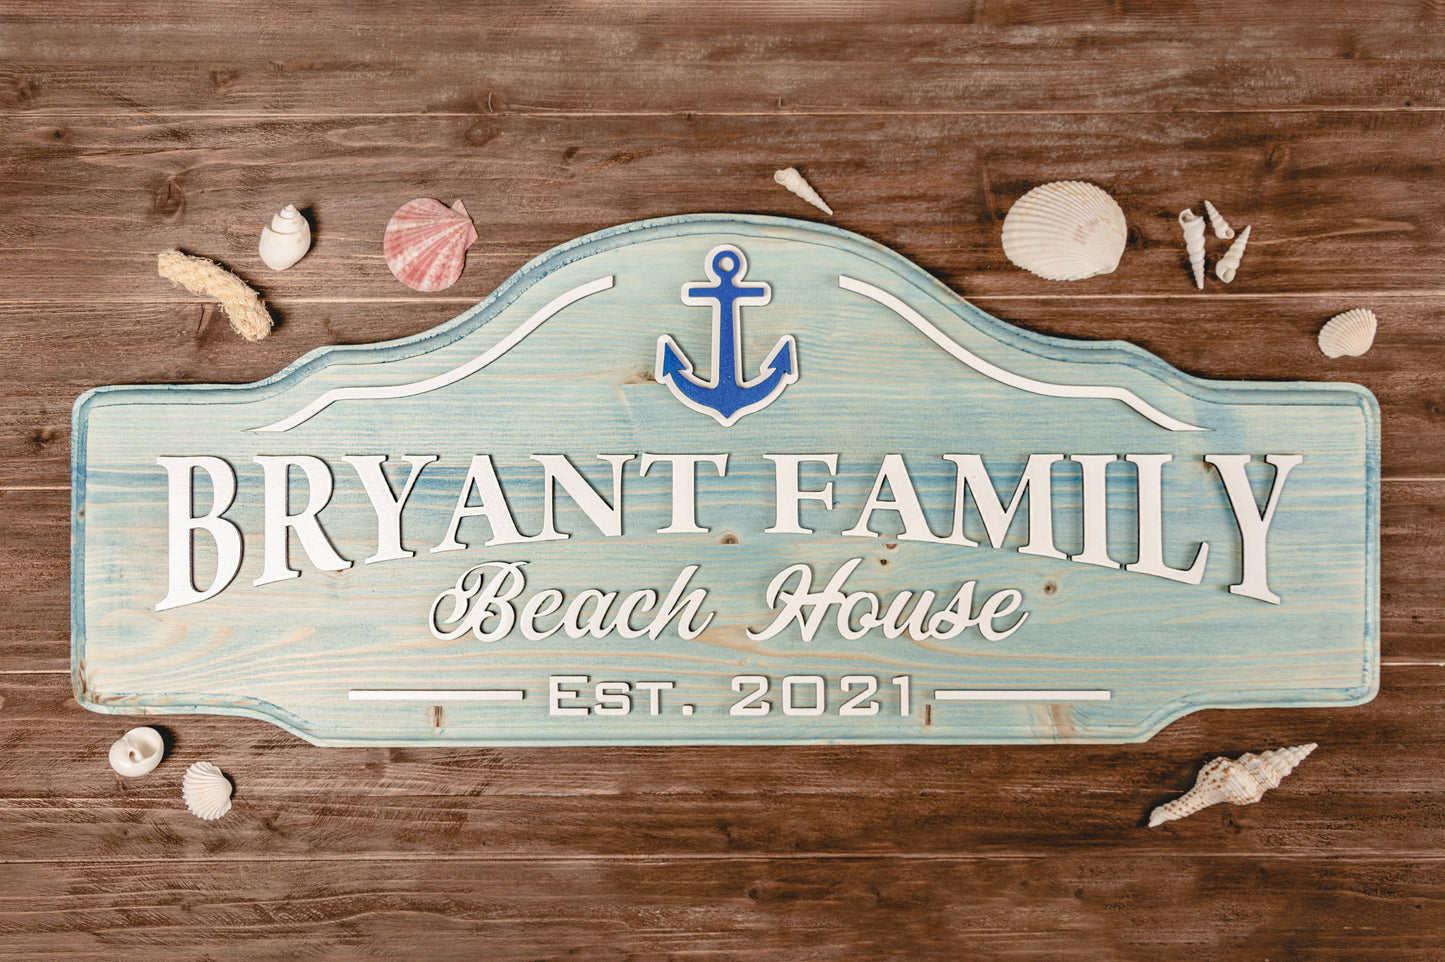 
                  
                    Beach House Sign Craftmysign
                  
                